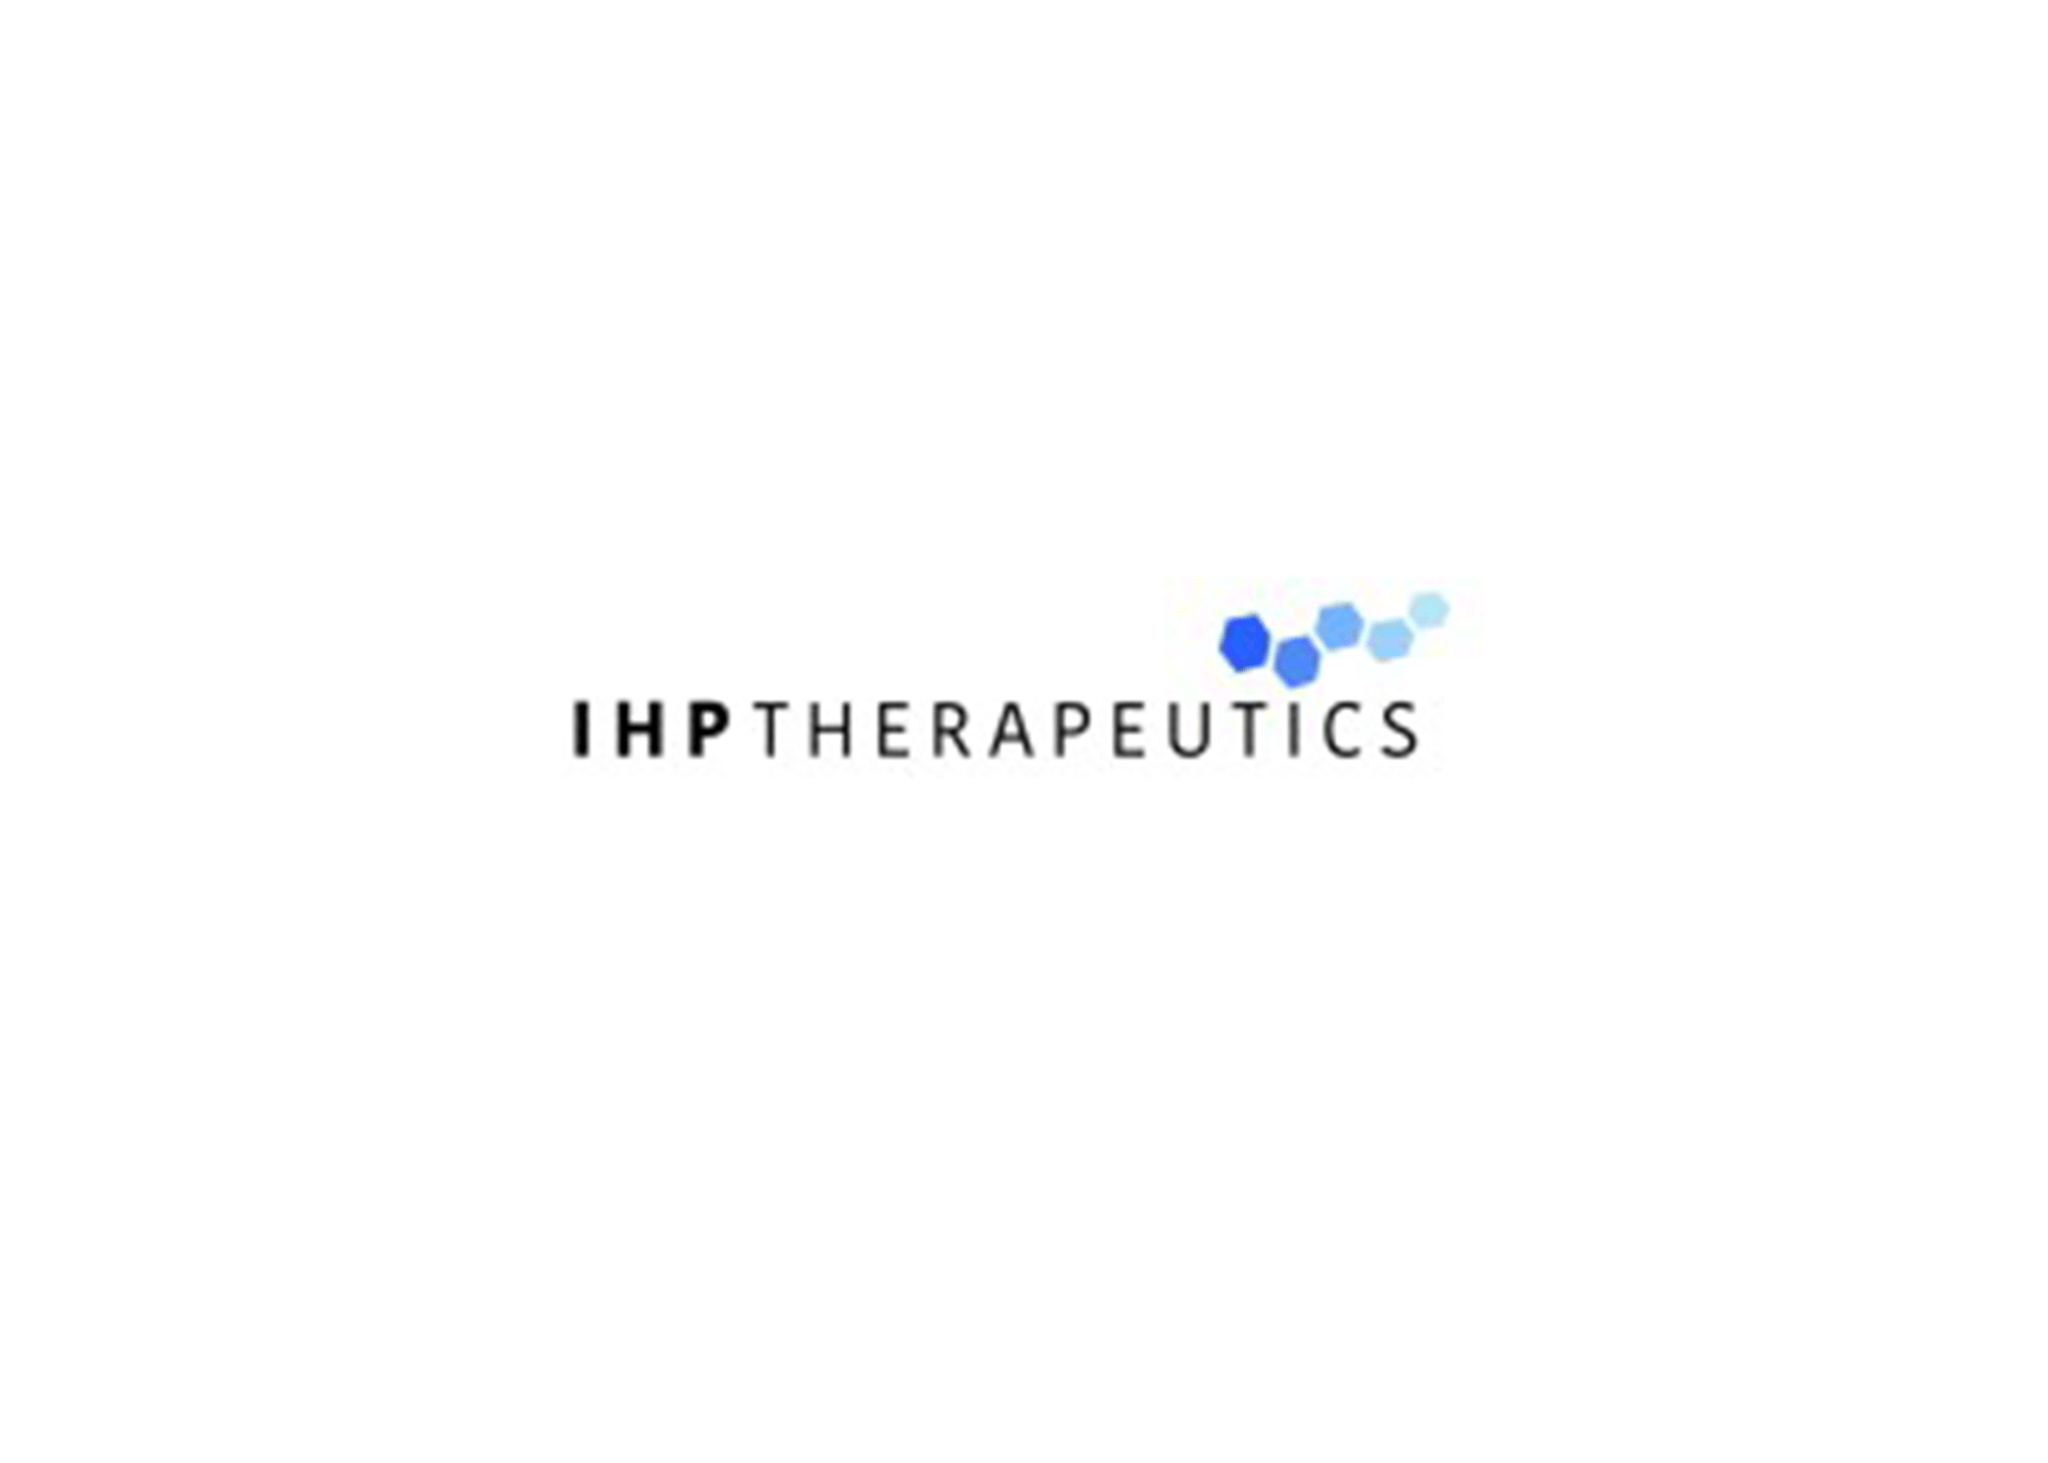 IHPtherapeutics